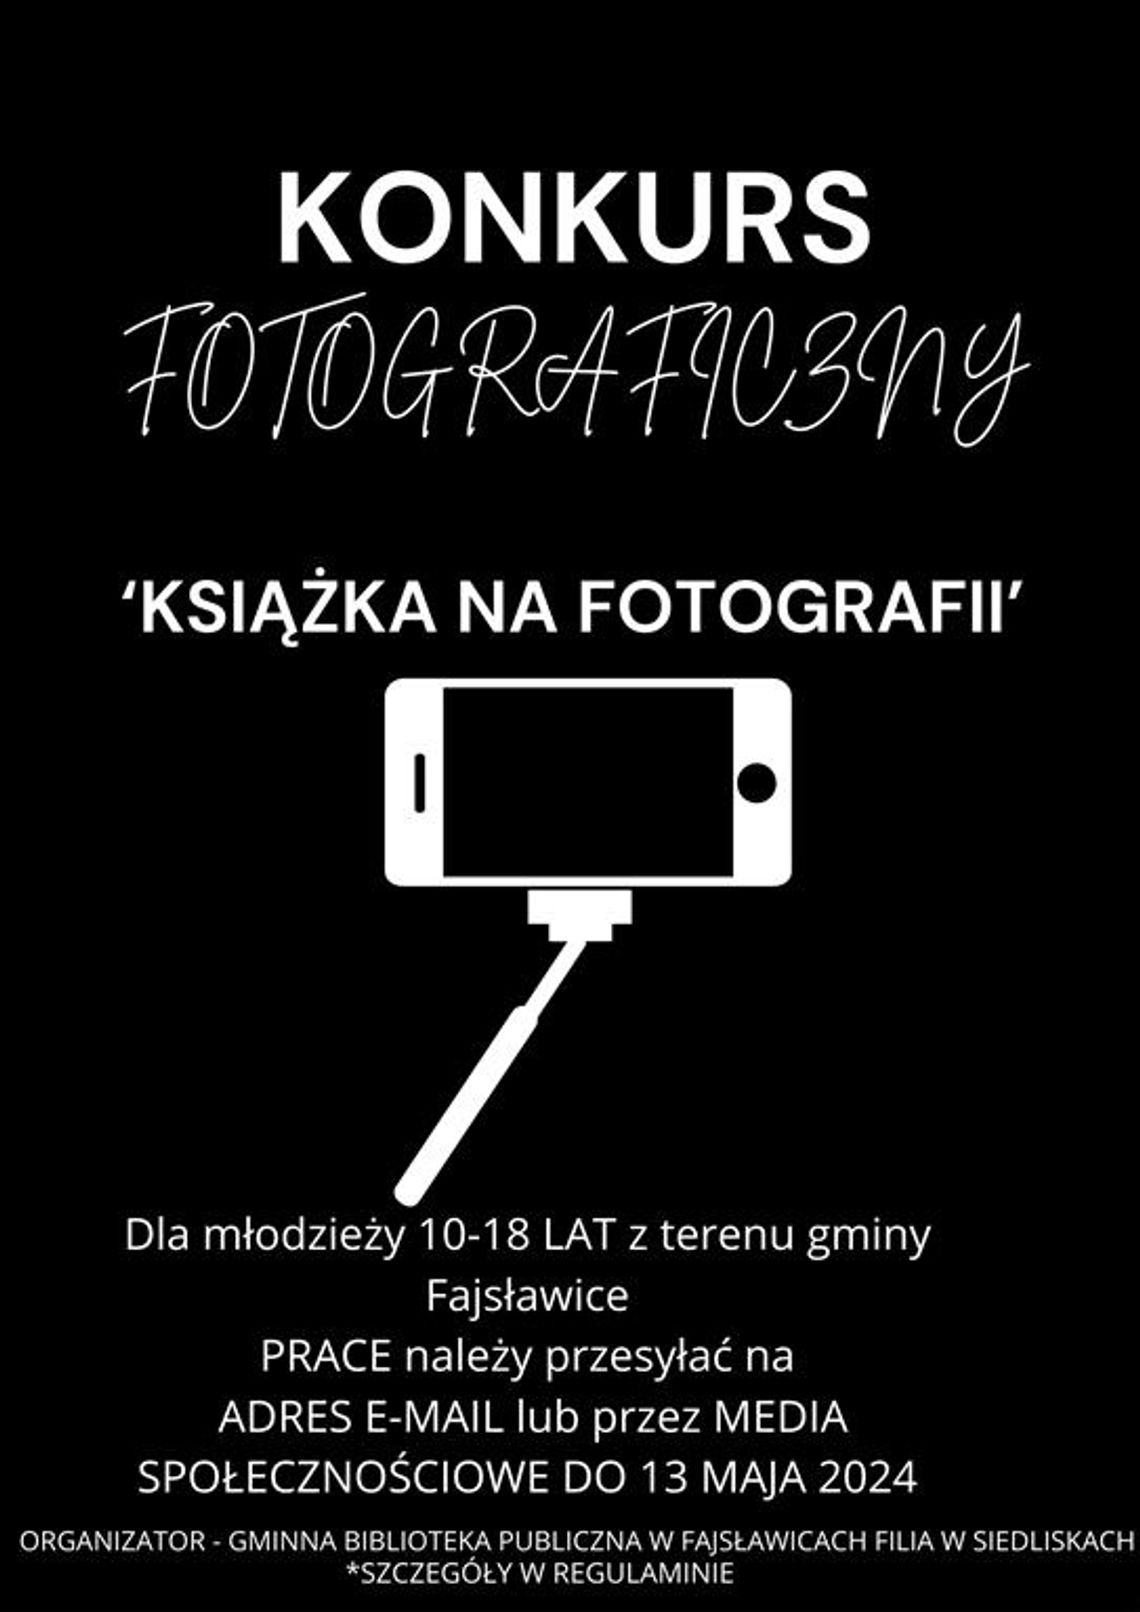 Plakat informuje o konkursie fotograficznym pn.: "Książka na fotografii", organizowanym przez Gminną Bibliotekę Publiczną w Fajsławicach